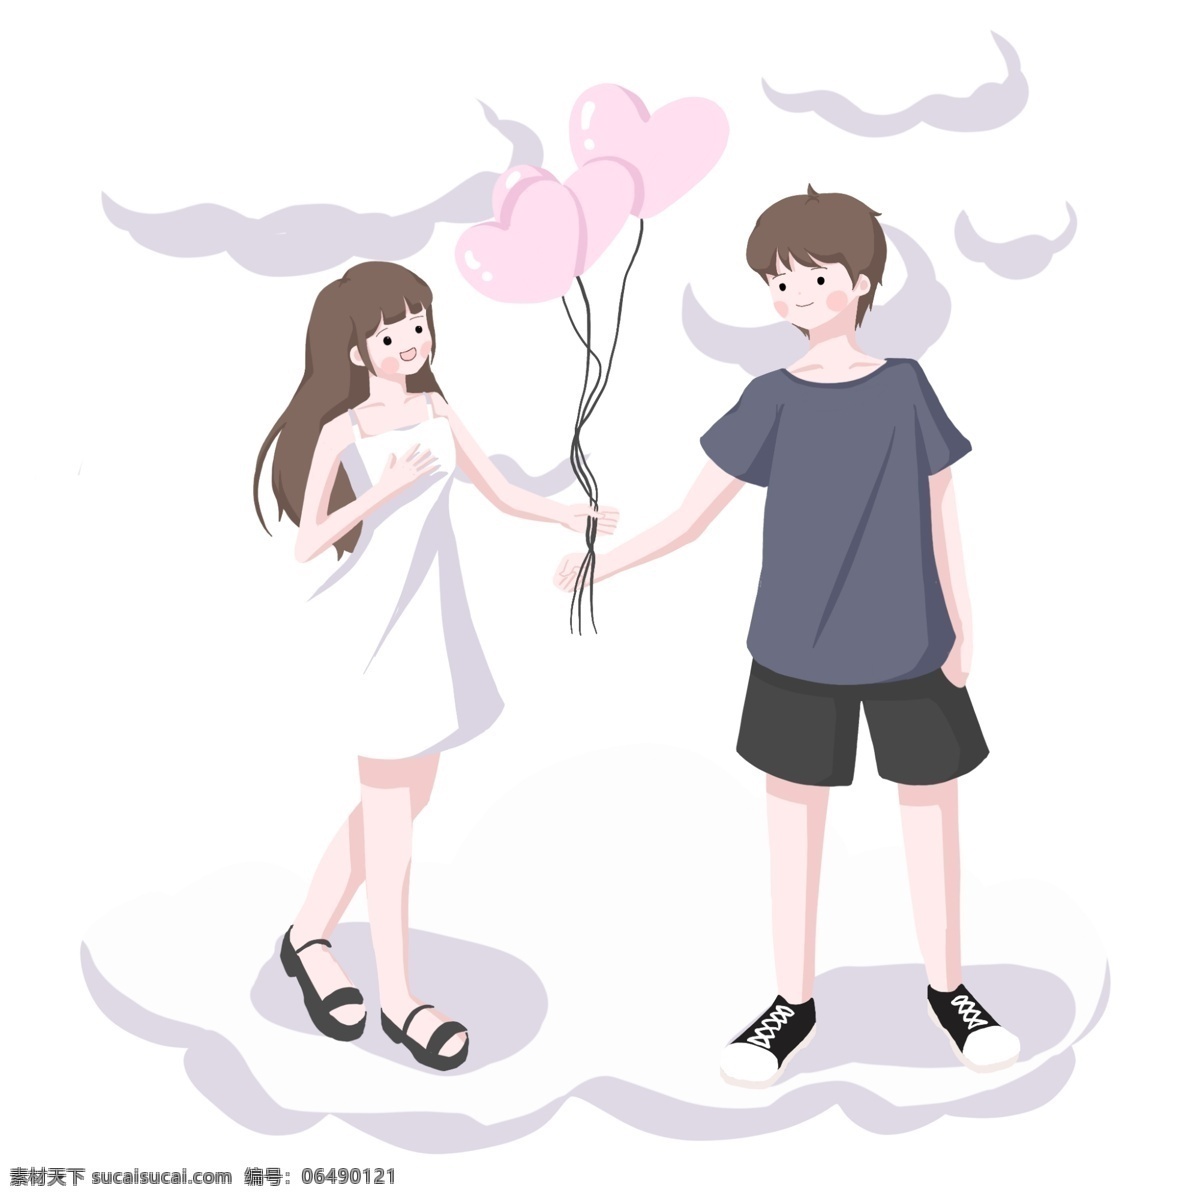 情人节 气球 表白 图 情侣 白色连衣裙 白云朵朵 可爱 粉色爱心气球 短发帅气 色彩靓丽